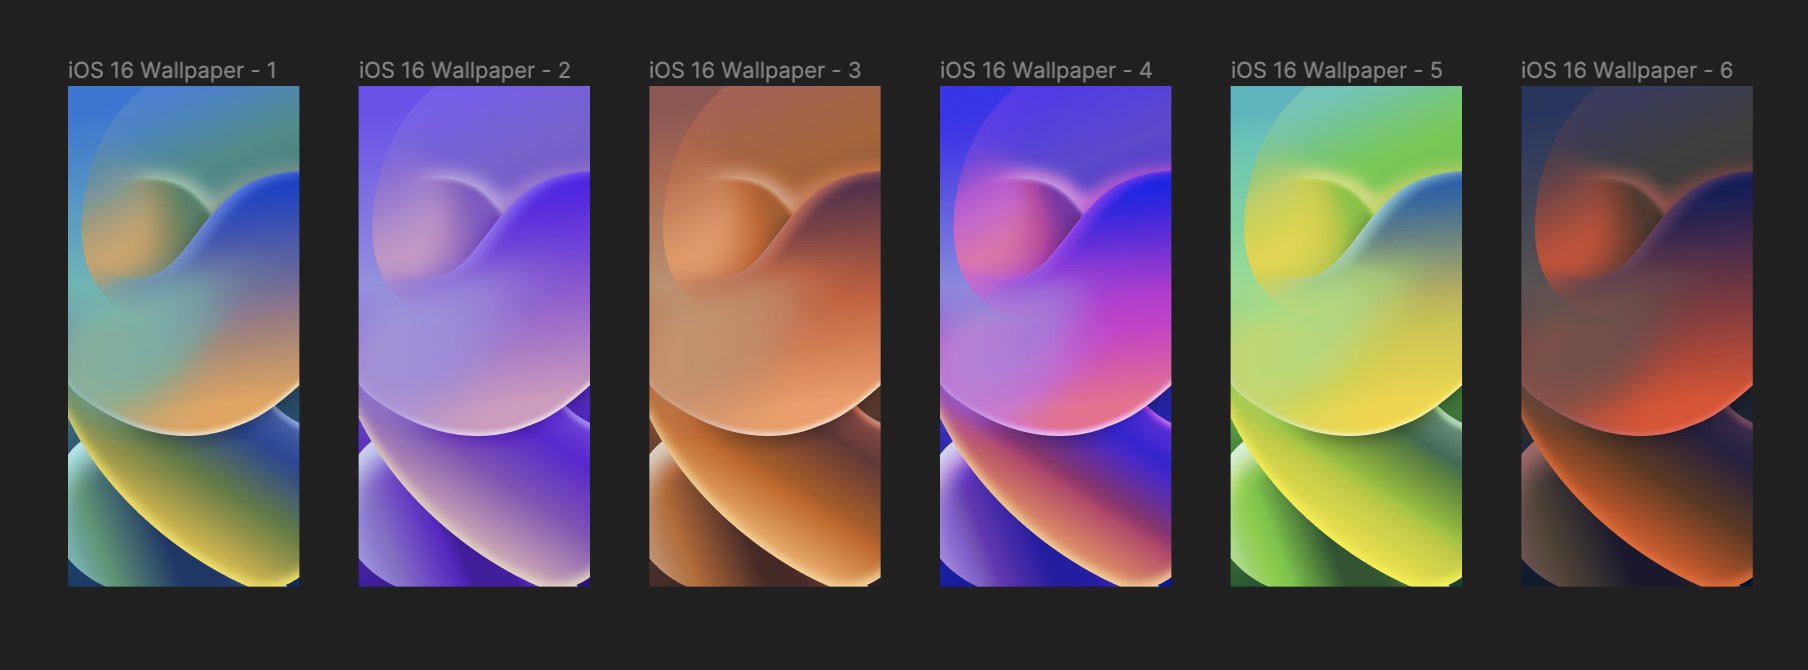 iOS 16 hình nền mới: Với iOS 16, bạn sẽ được trải nghiệm những hình nền mới nhất, với nhiều chủ đề hấp dẫn và độc đáo. Những hình ảnh này sẽ giúp cho màn hình của bạn trở nên thật sự độc đáo và nổi bật, mang đến sự tươi mới và mới mẻ cho cuộc sống của bạn. Hãy xem các hình ảnh liên quan để khám phá thêm nhé!